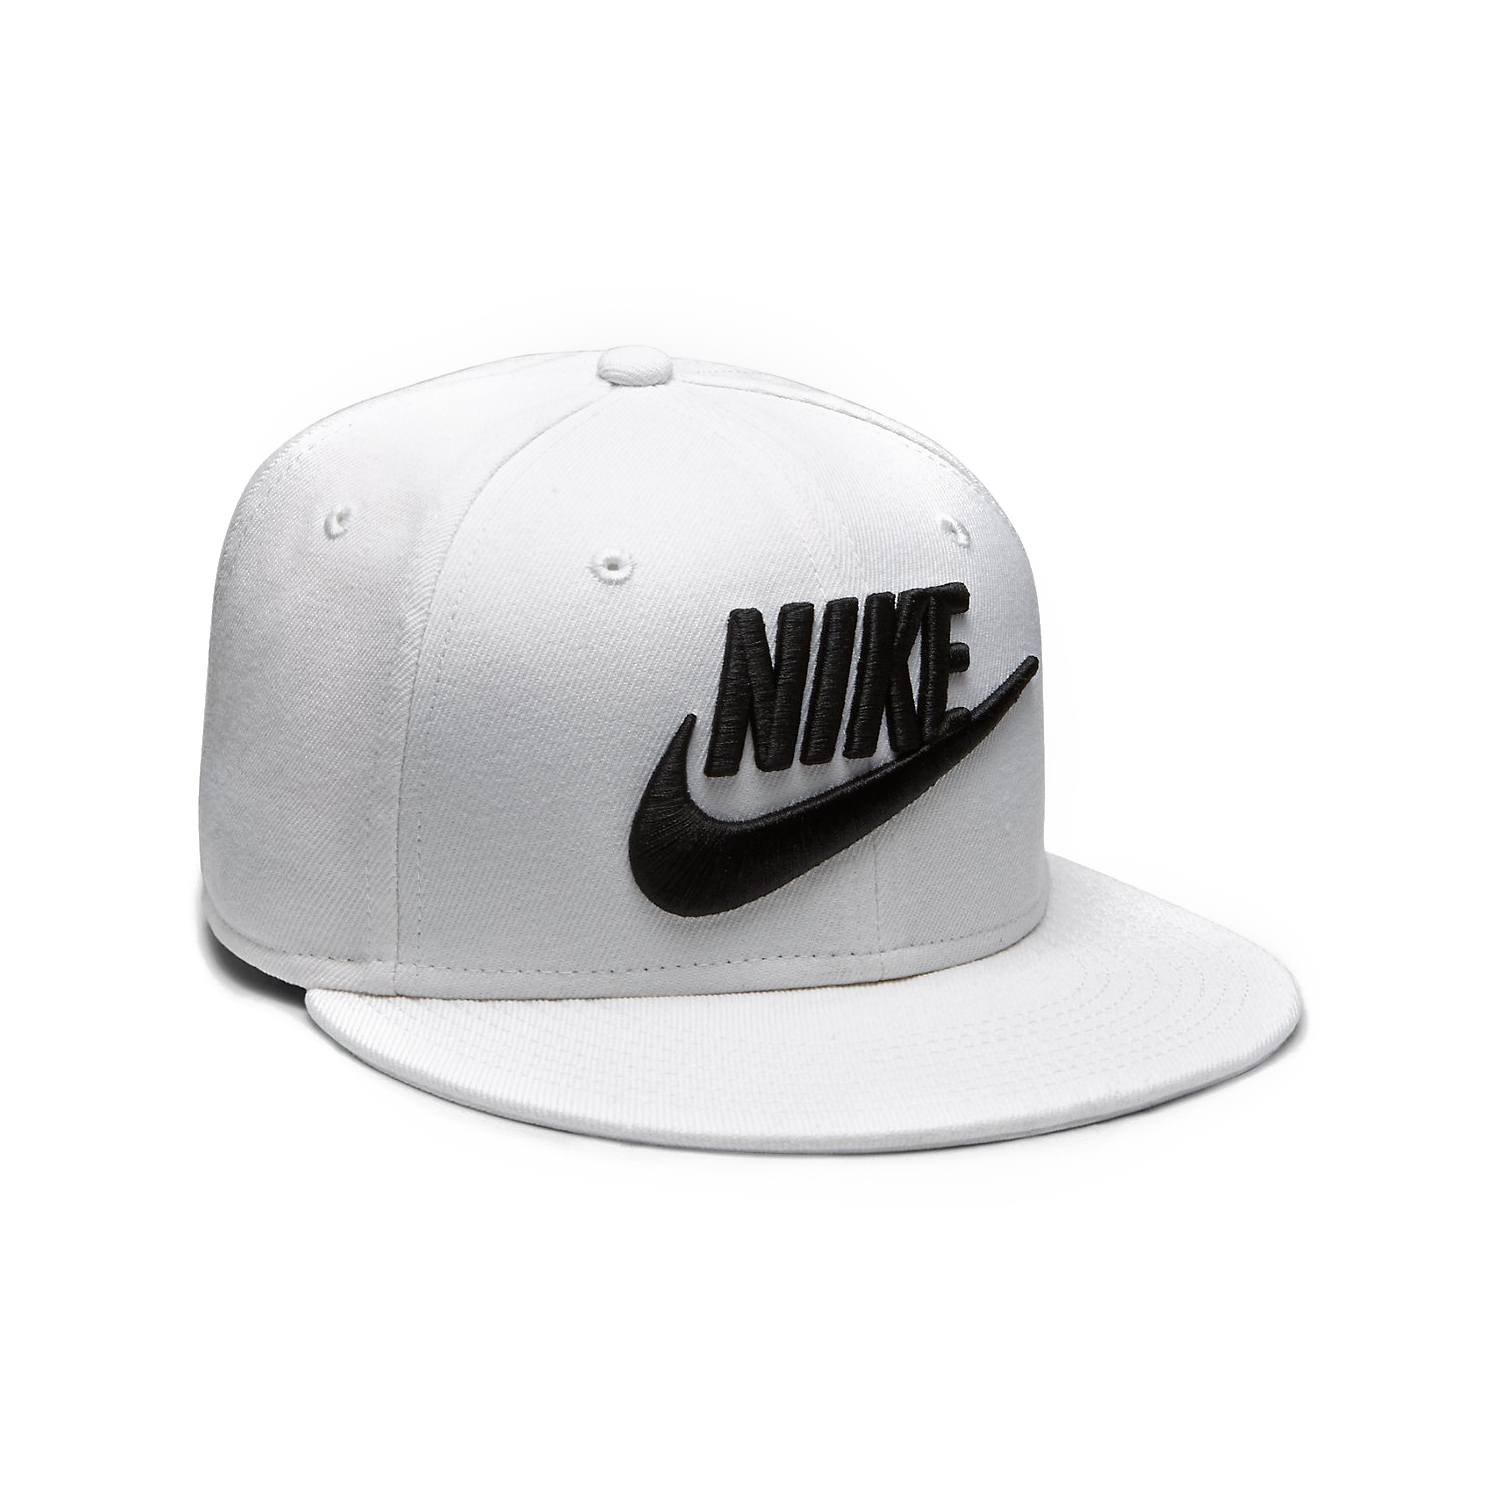 美國百分百【全新真品】NIKE 耐吉 snapback 帽子 配件 棒球帽 男女 遮陽帽 卡車司機 白色 J045